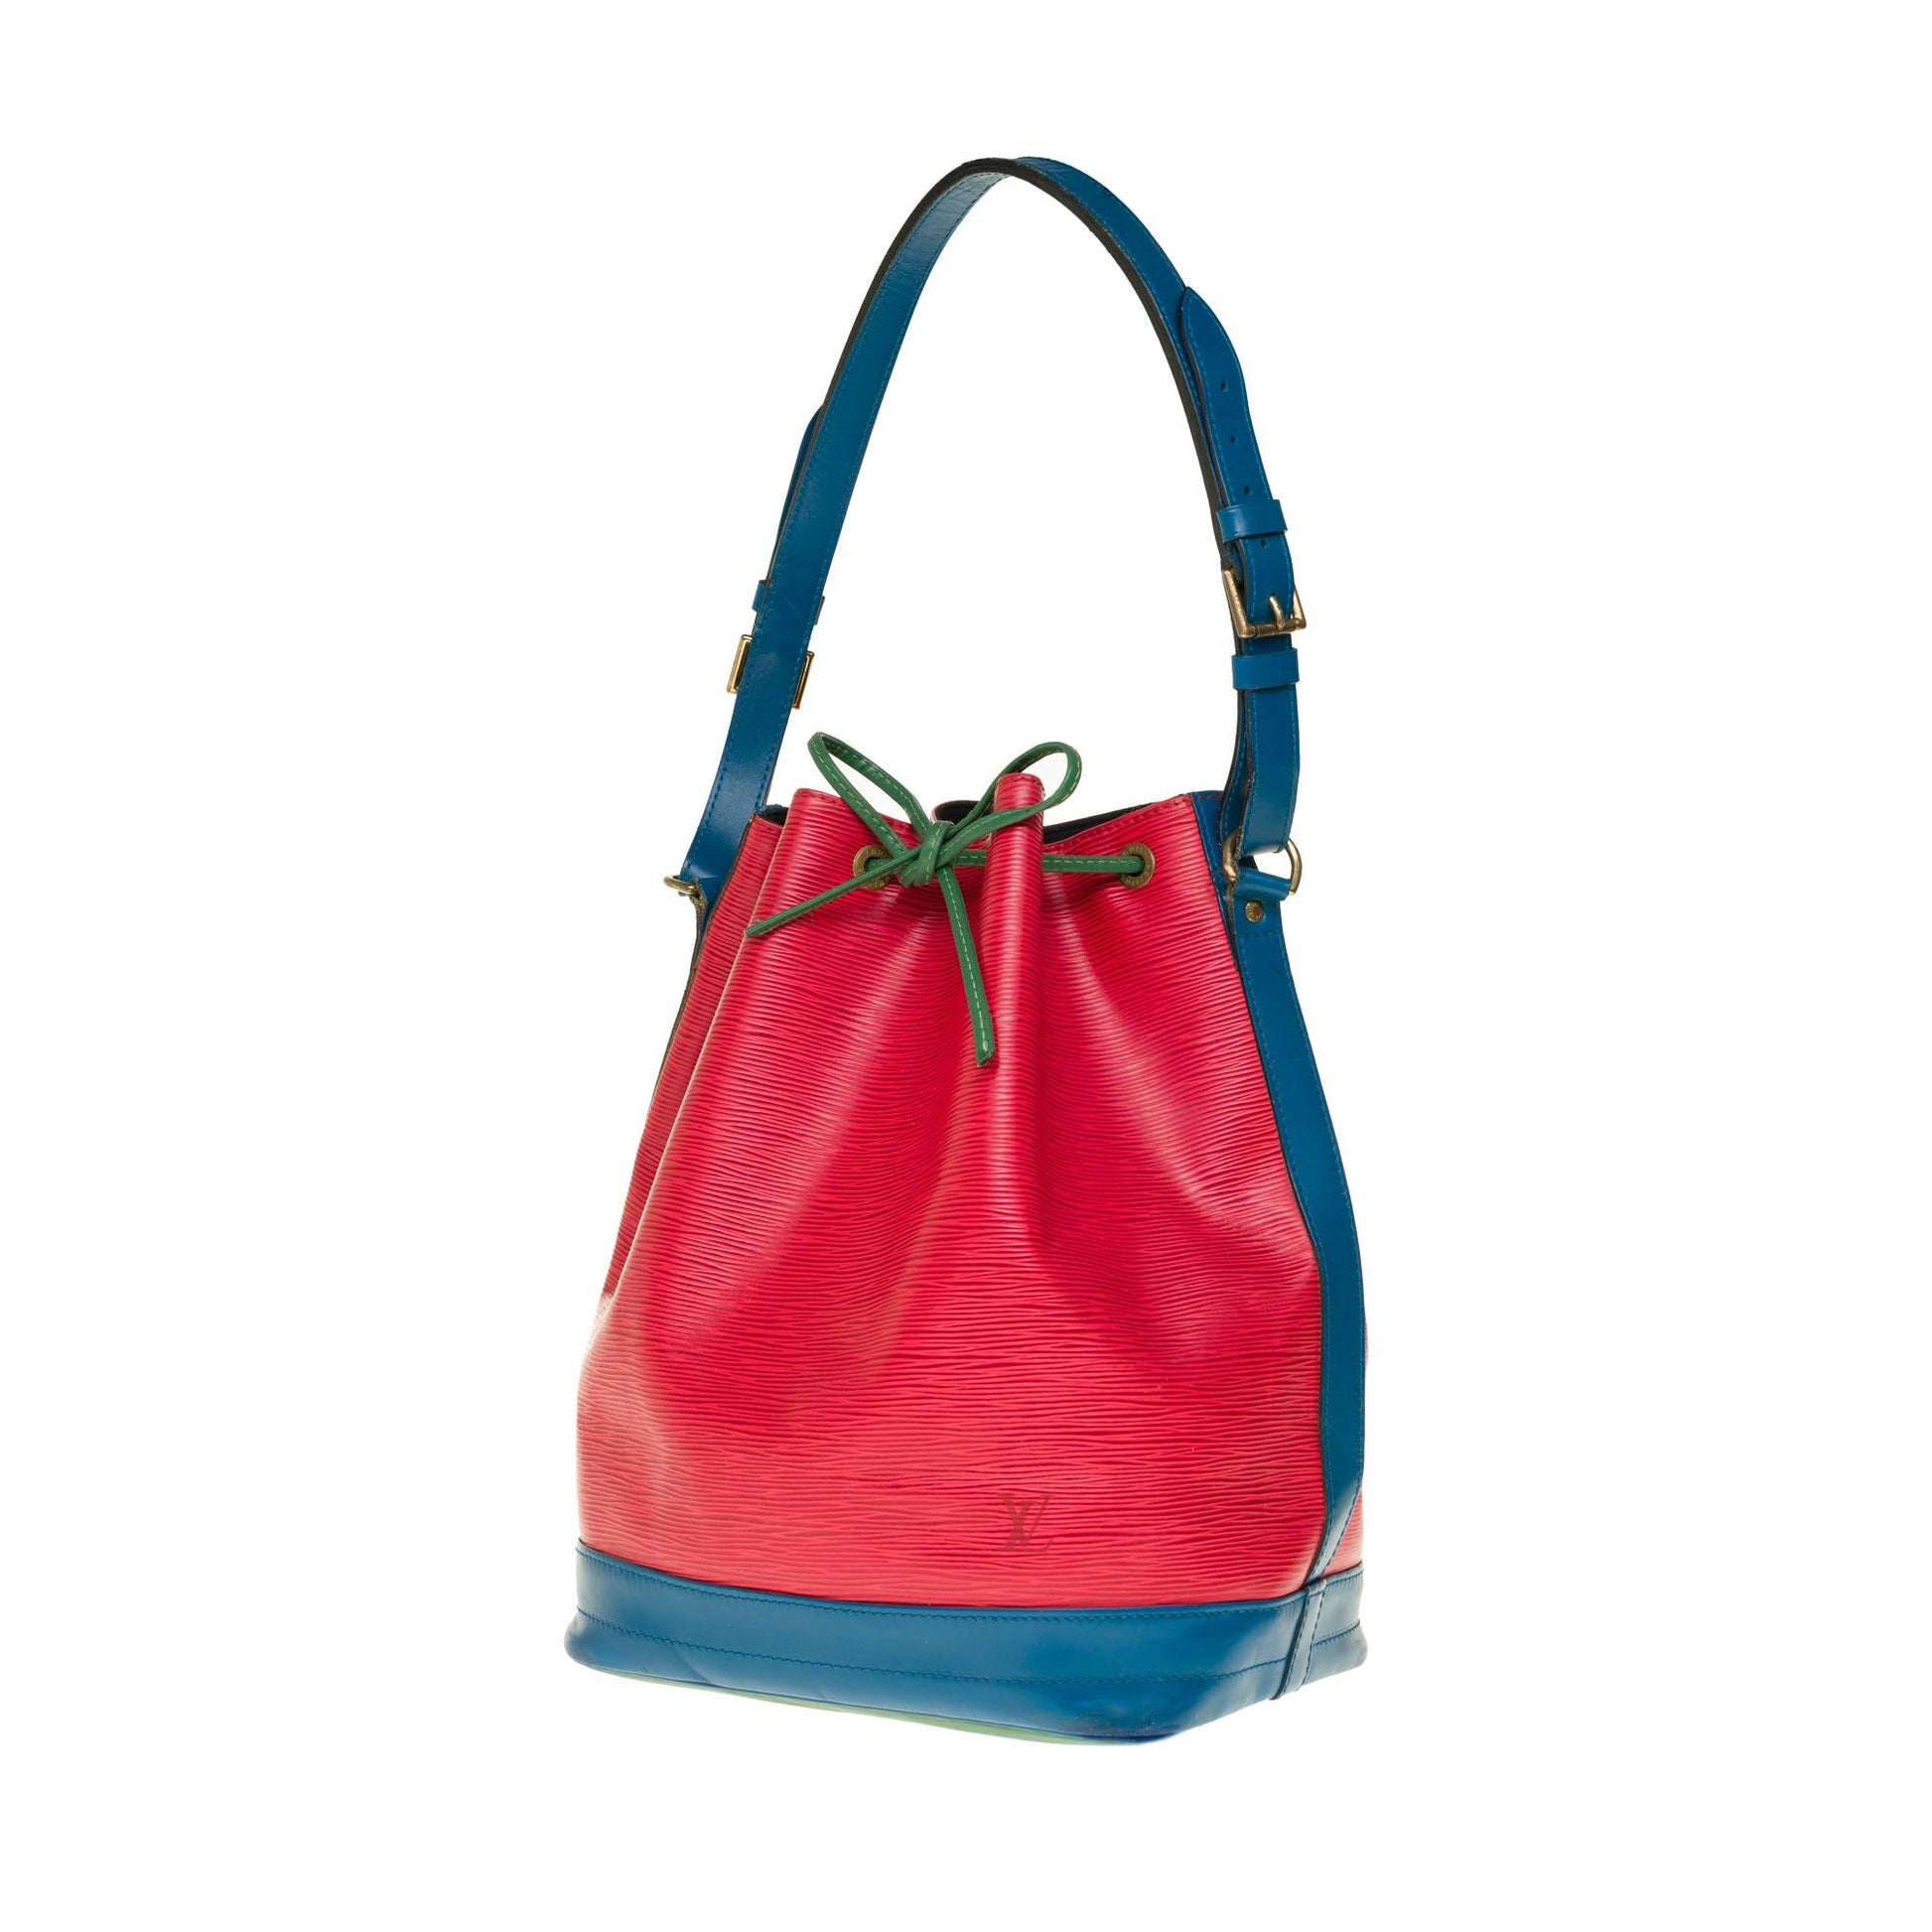 3ac2816] Auth Louis Vuitton Shoulder Bag Epi Noe M44084 Castilian Red/Toledo  Blue/Porneo Green